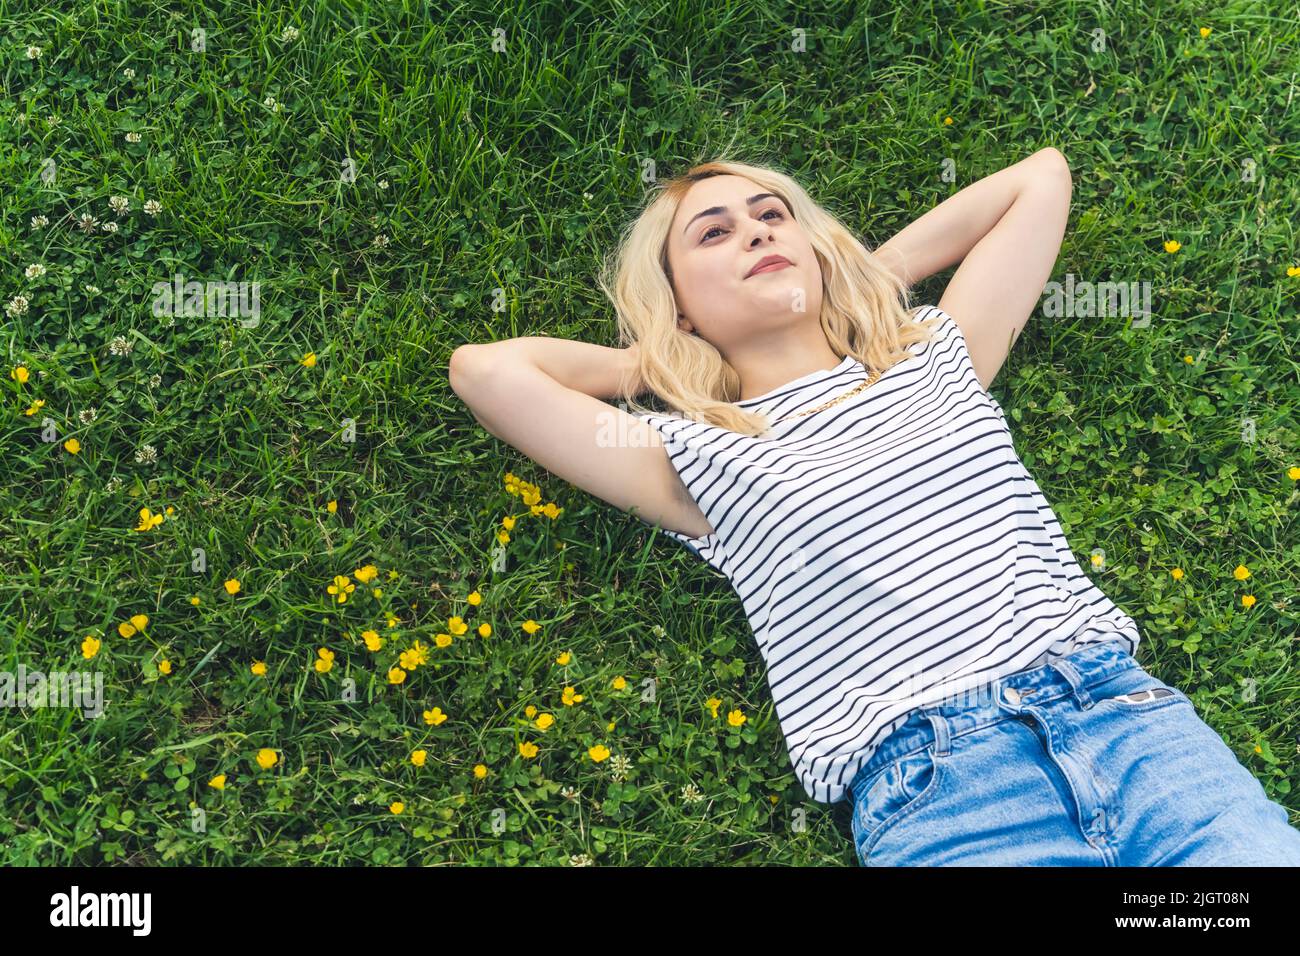 Ruhiges, friedliches, junges blondes Mädchen, das auf dem Gras liegt und die Hände unter dem Kopf hält und träumt. Mittlerer Schuss. Hochwertige Fotos Stockfoto